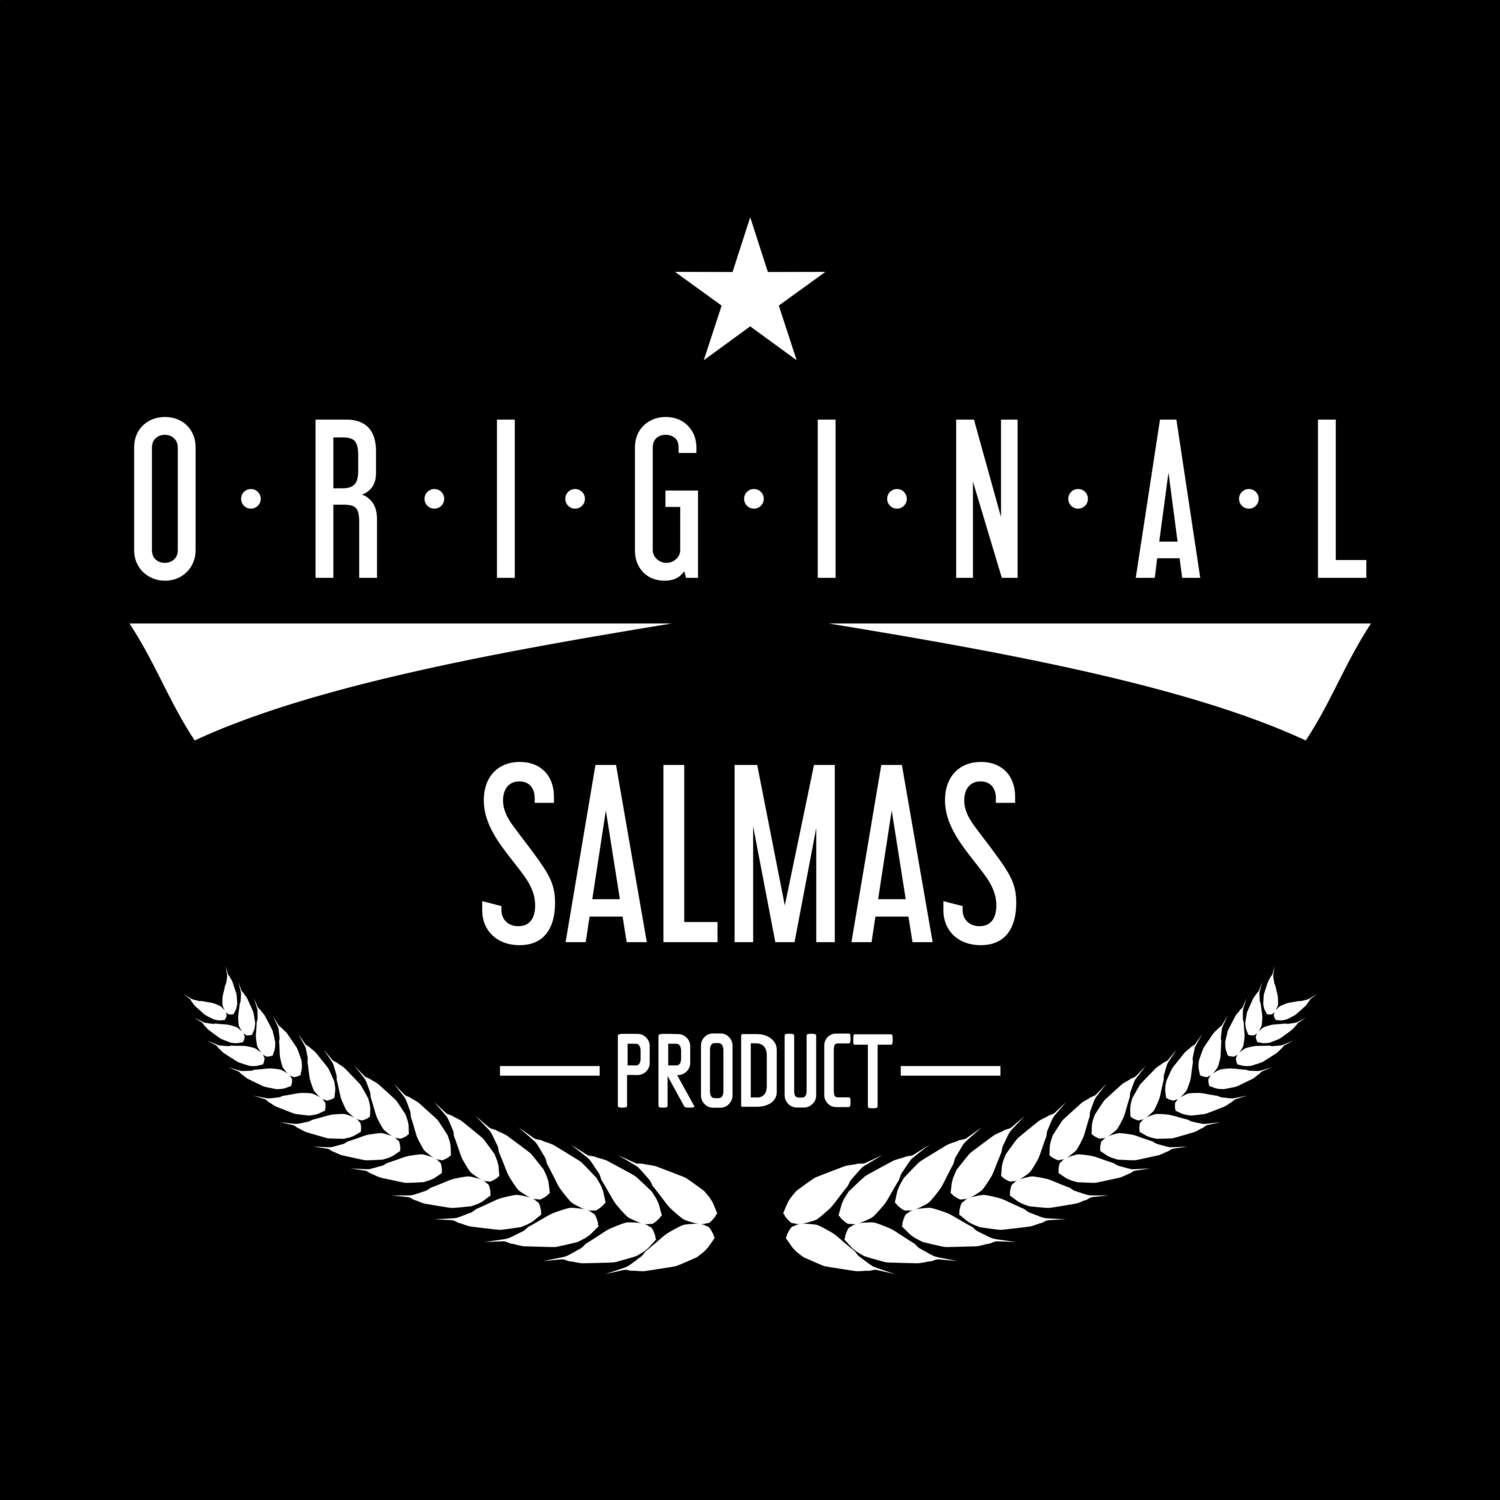 Salmas T-Shirt »Original Product«